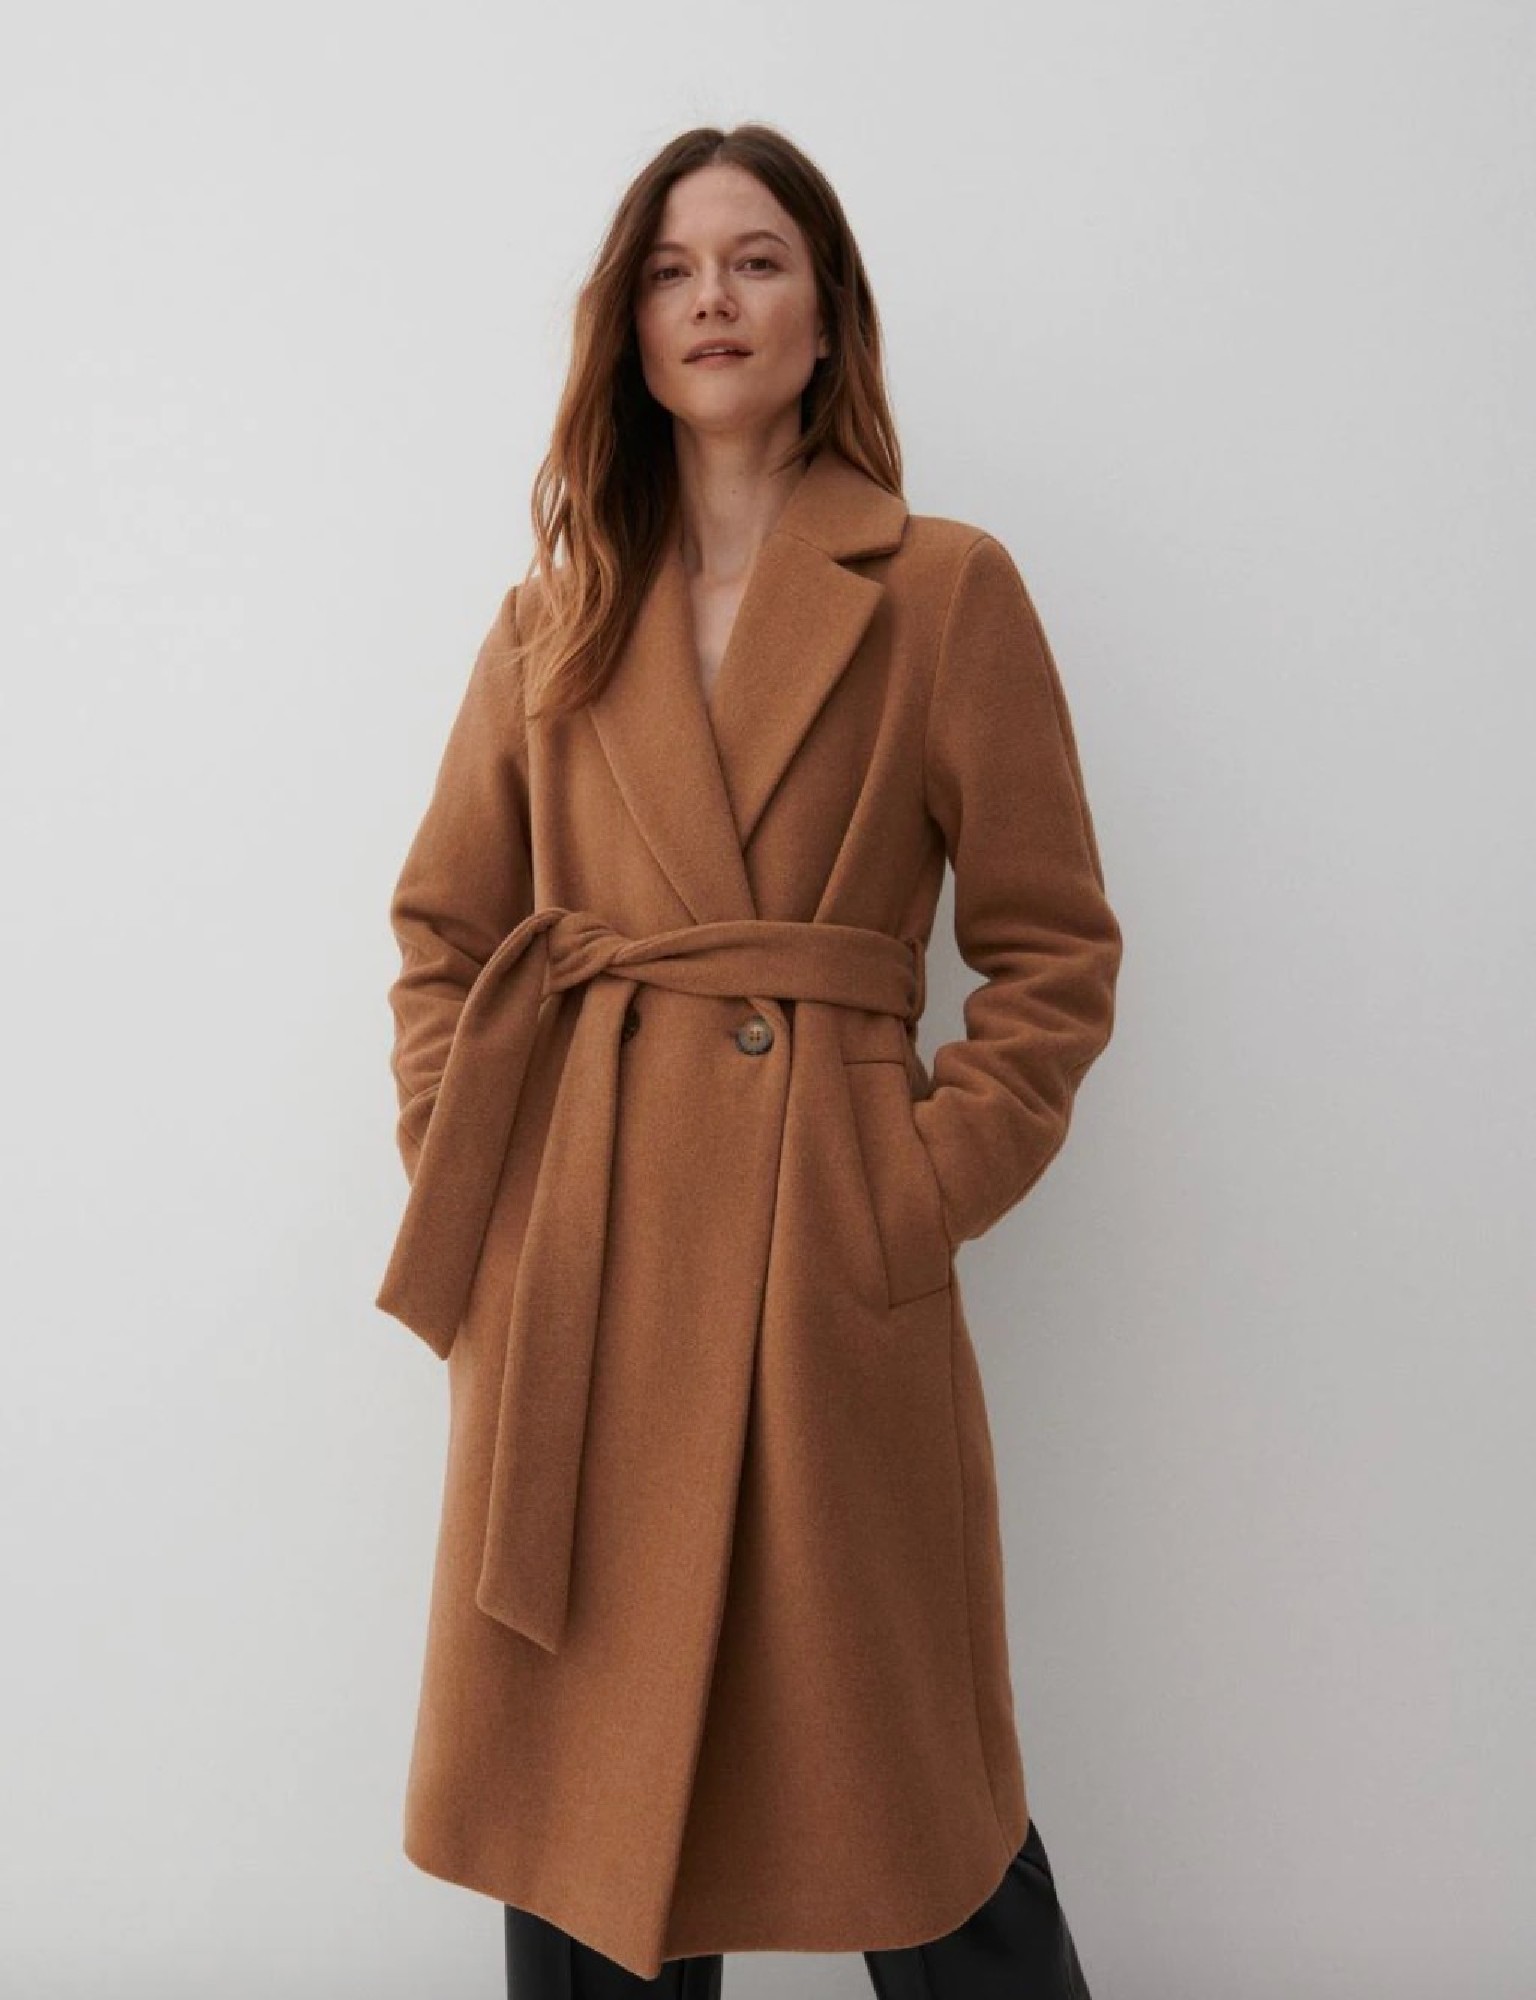 les manteaux femme 2021